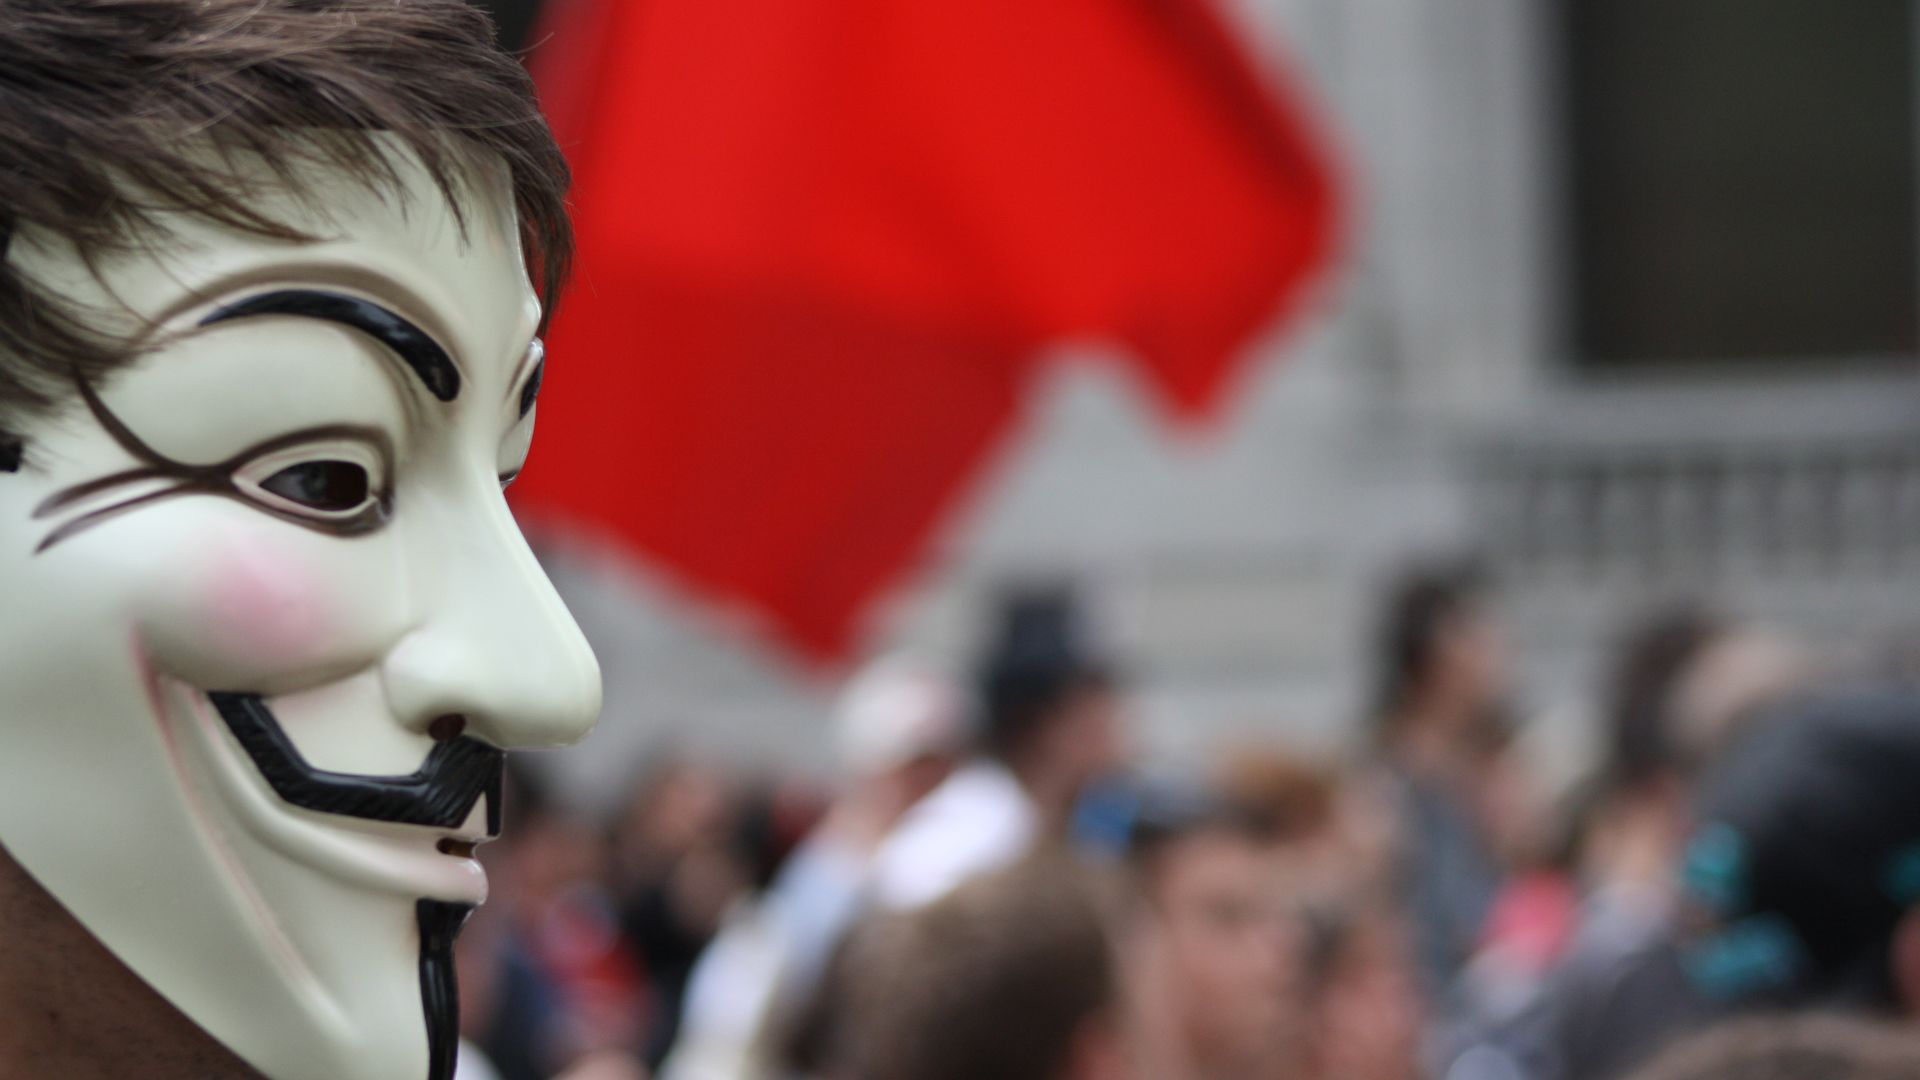 Interview zum potentiellen Anonymitätsverlust im Internet